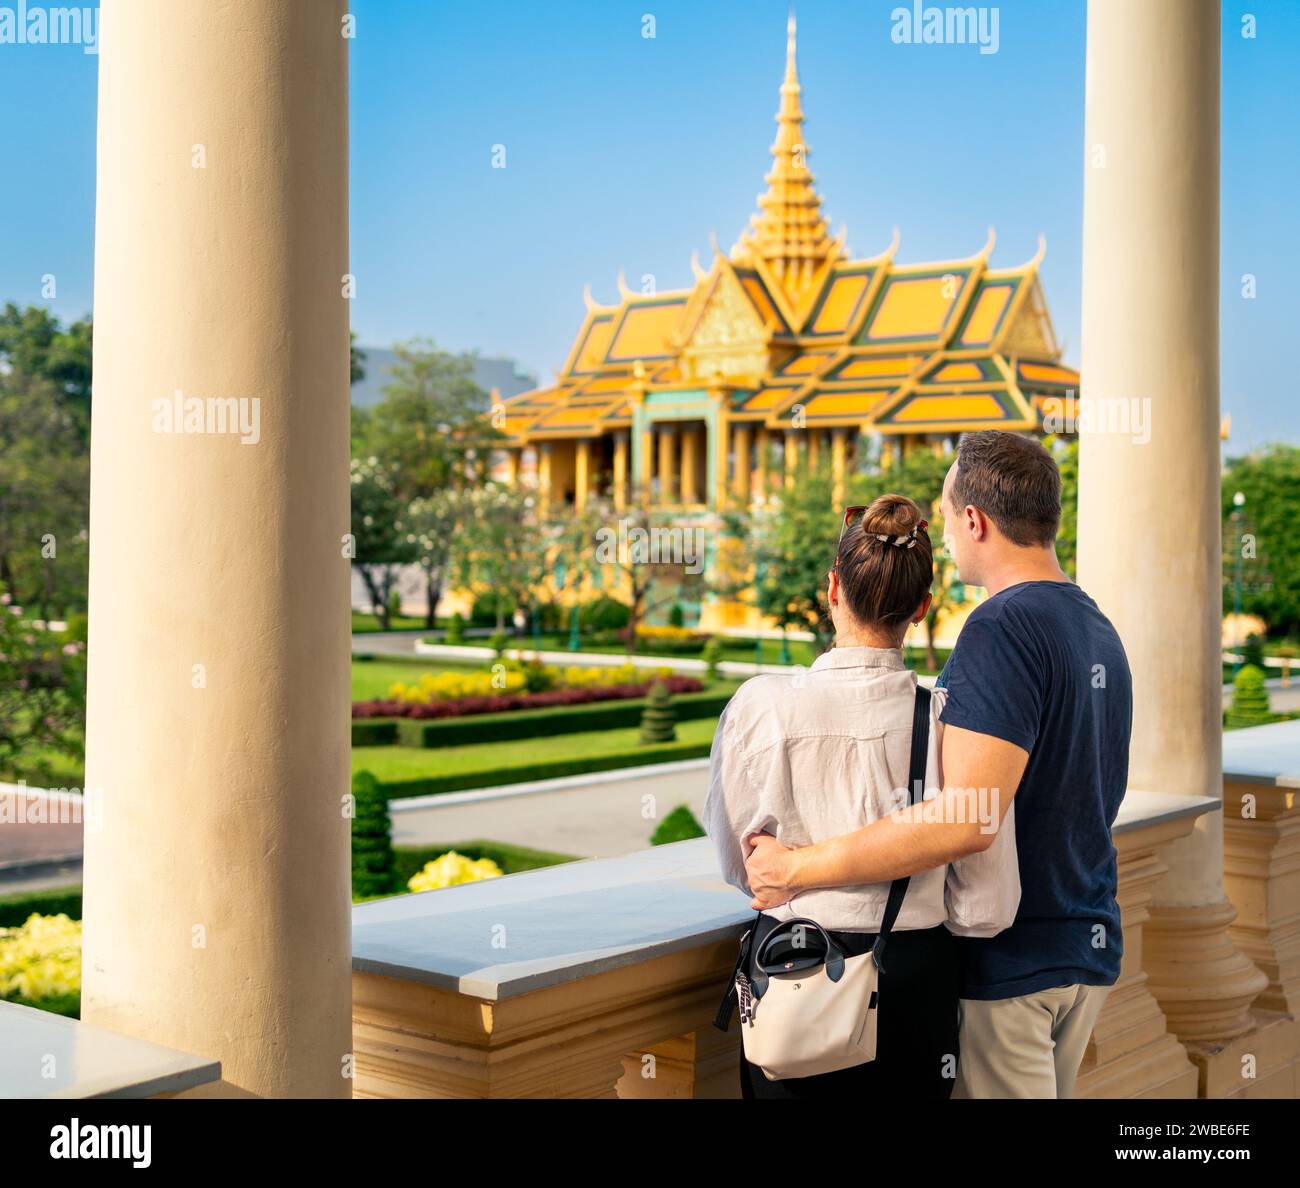 Touristenpaar in Phnom Penh, Kambodscha. Tourismus im Königspalast. Reisen Sie in Asien. Frau und Mann besuchen Wahrzeichen. Stadturlaub. Goldgebäude. Stockfoto